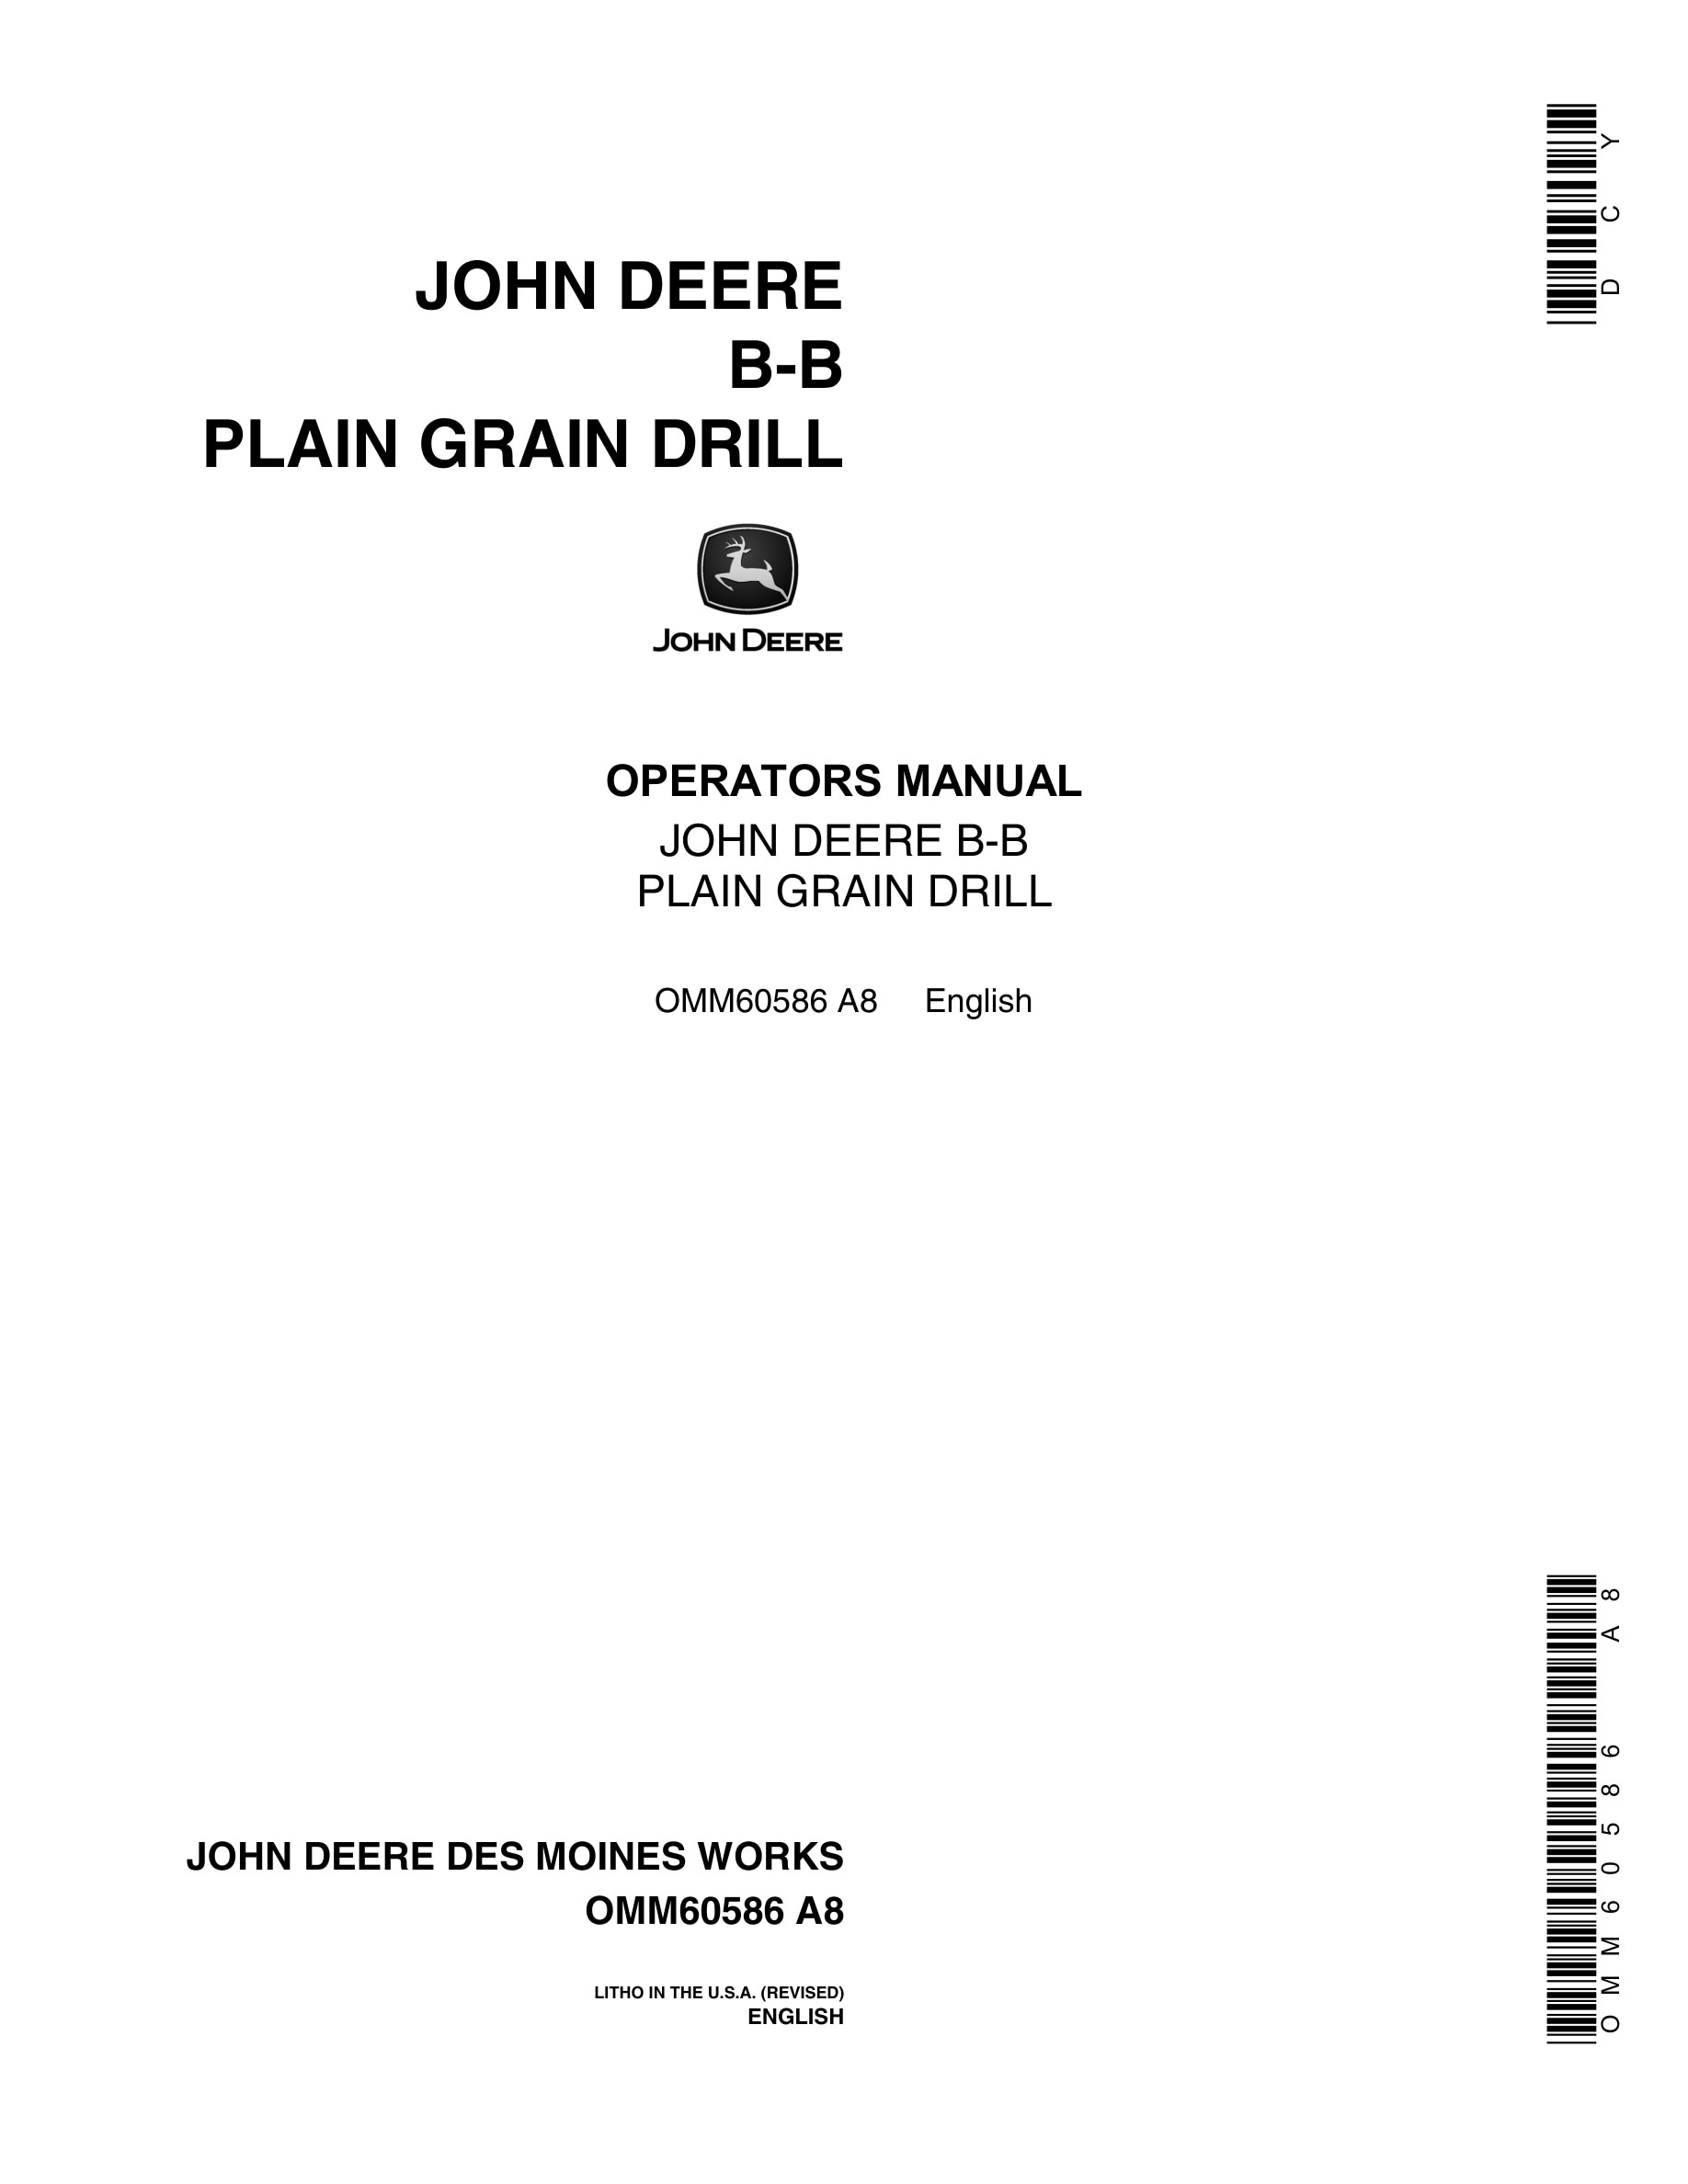 John Deere B-B PLAIN GRAIN DRILL Operator Manual OMM60586-1